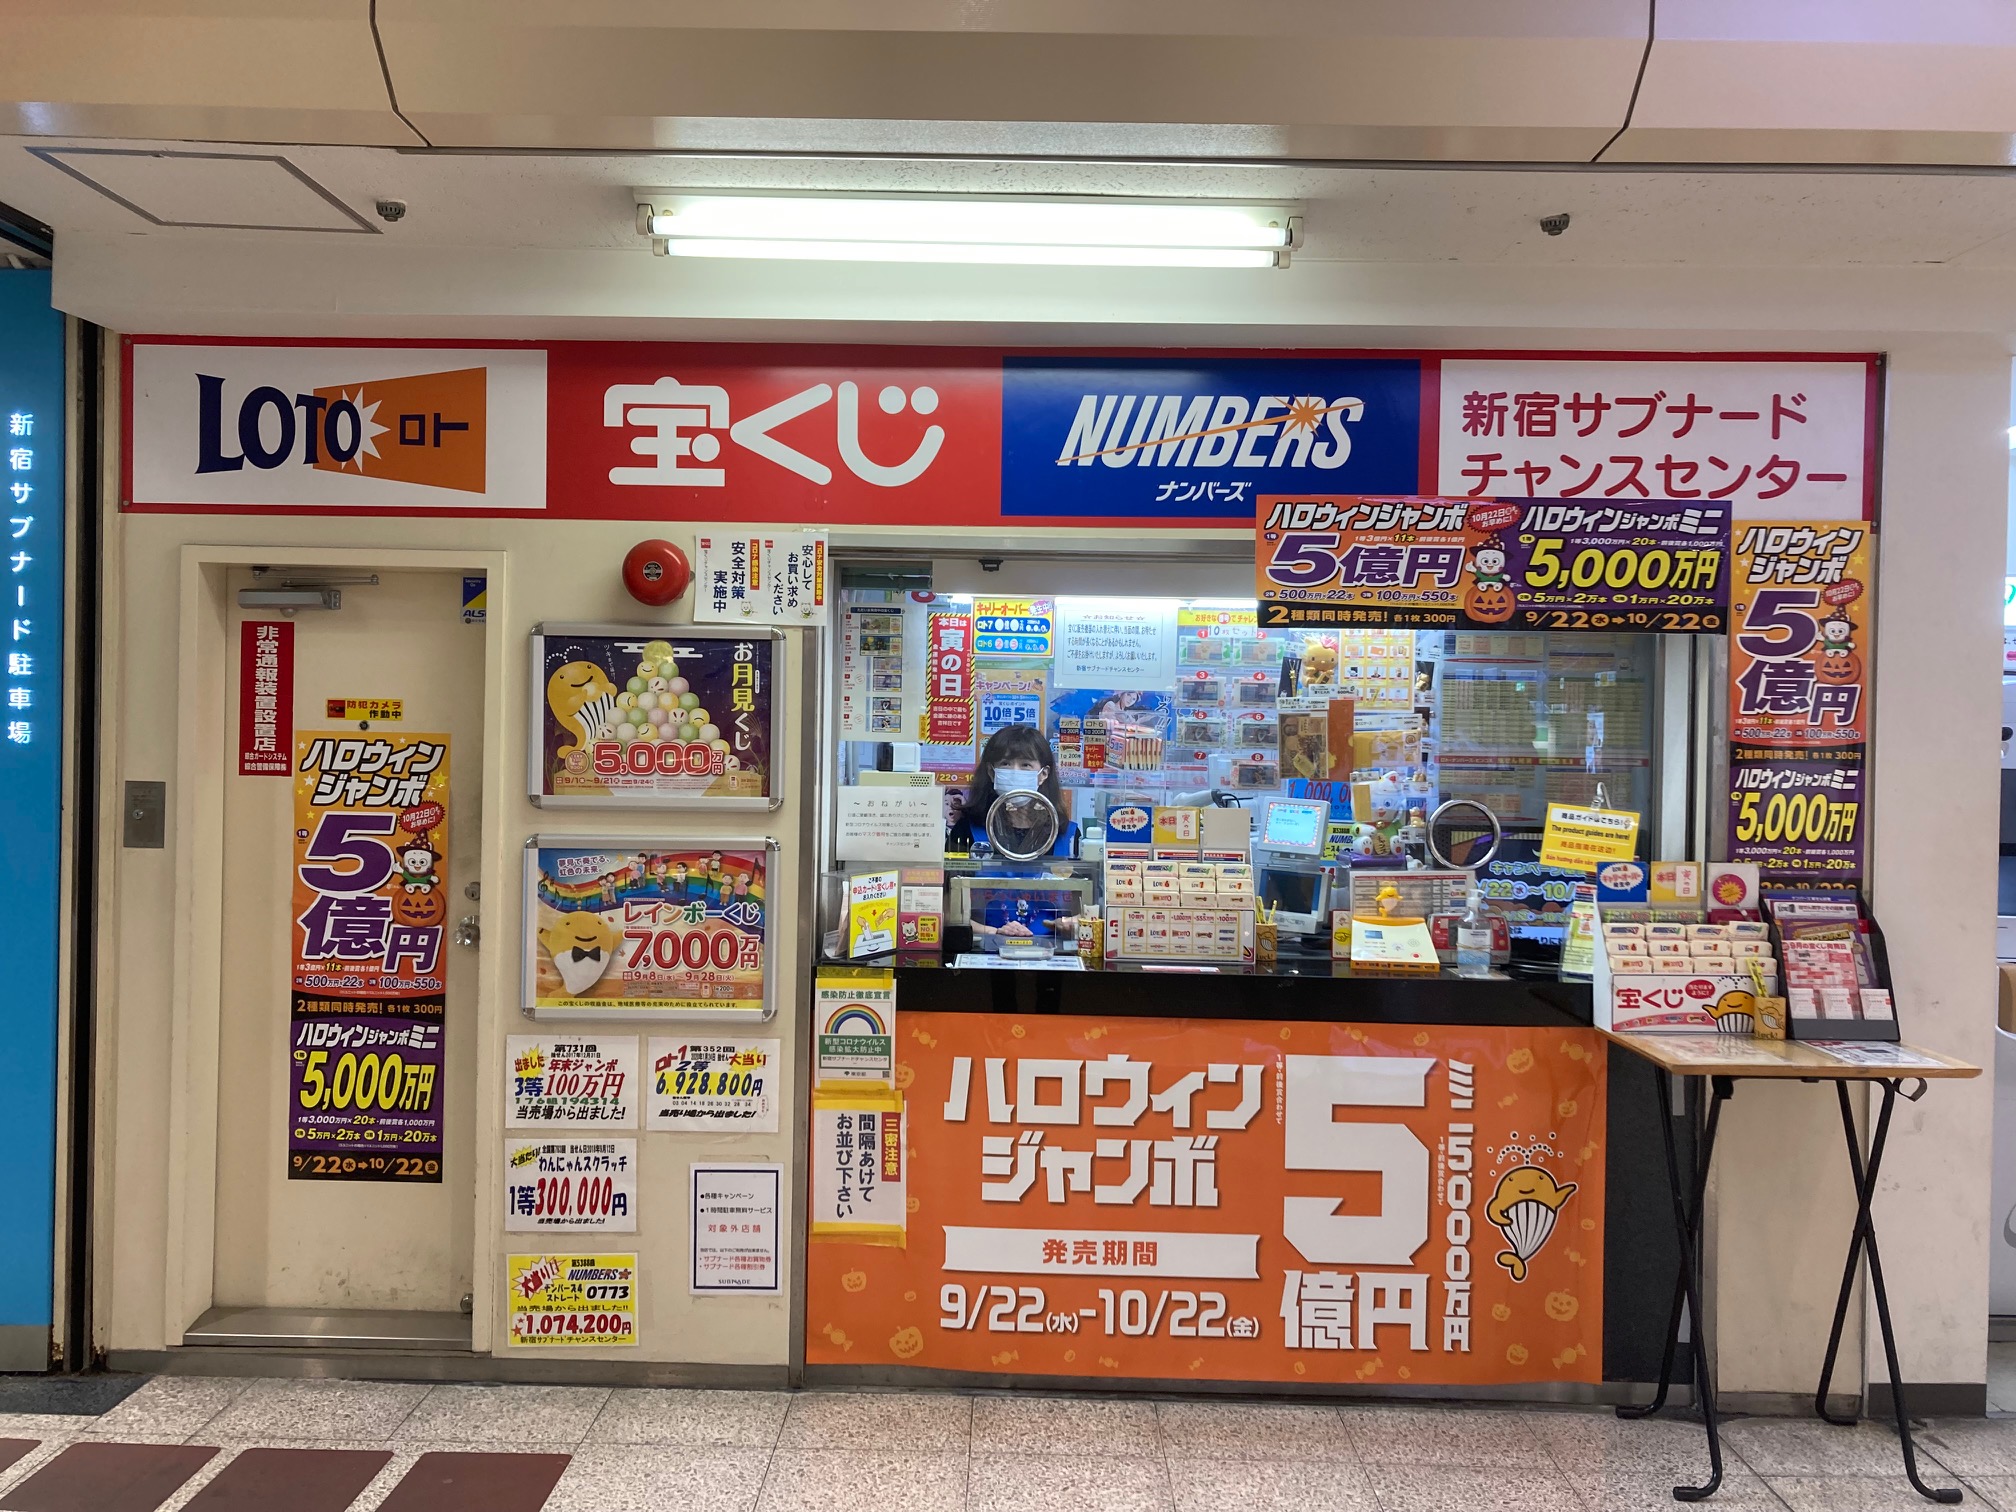 西日本 で よく 当たる 宝くじ 売り場